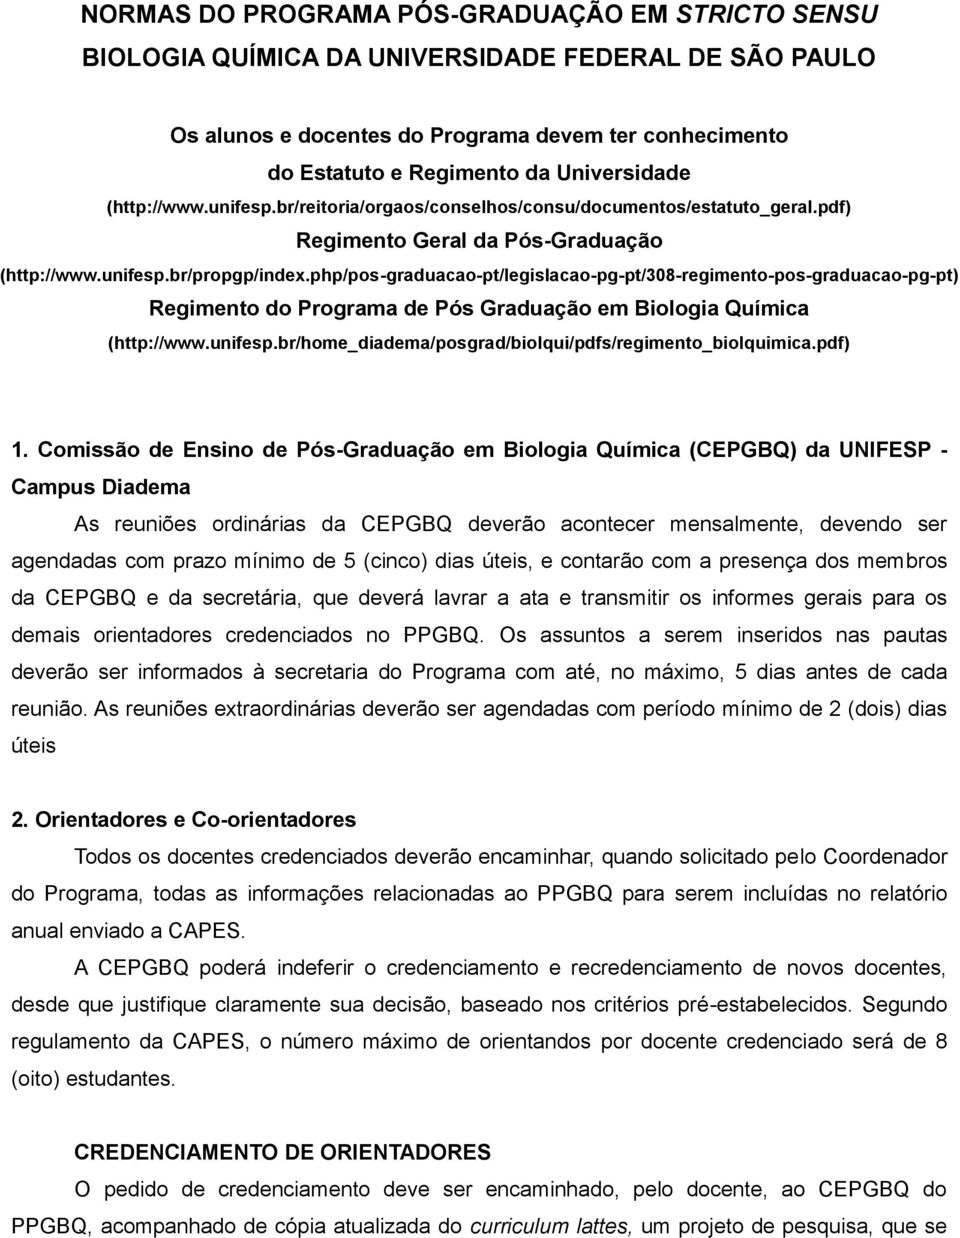 php/pos-graduacao-pt/legislacao-pg-pt/308-regimento-pos-graduacao-pg-pt) Regimento do Programa de Pós Graduação em Biologia Química (http://www.unifesp.